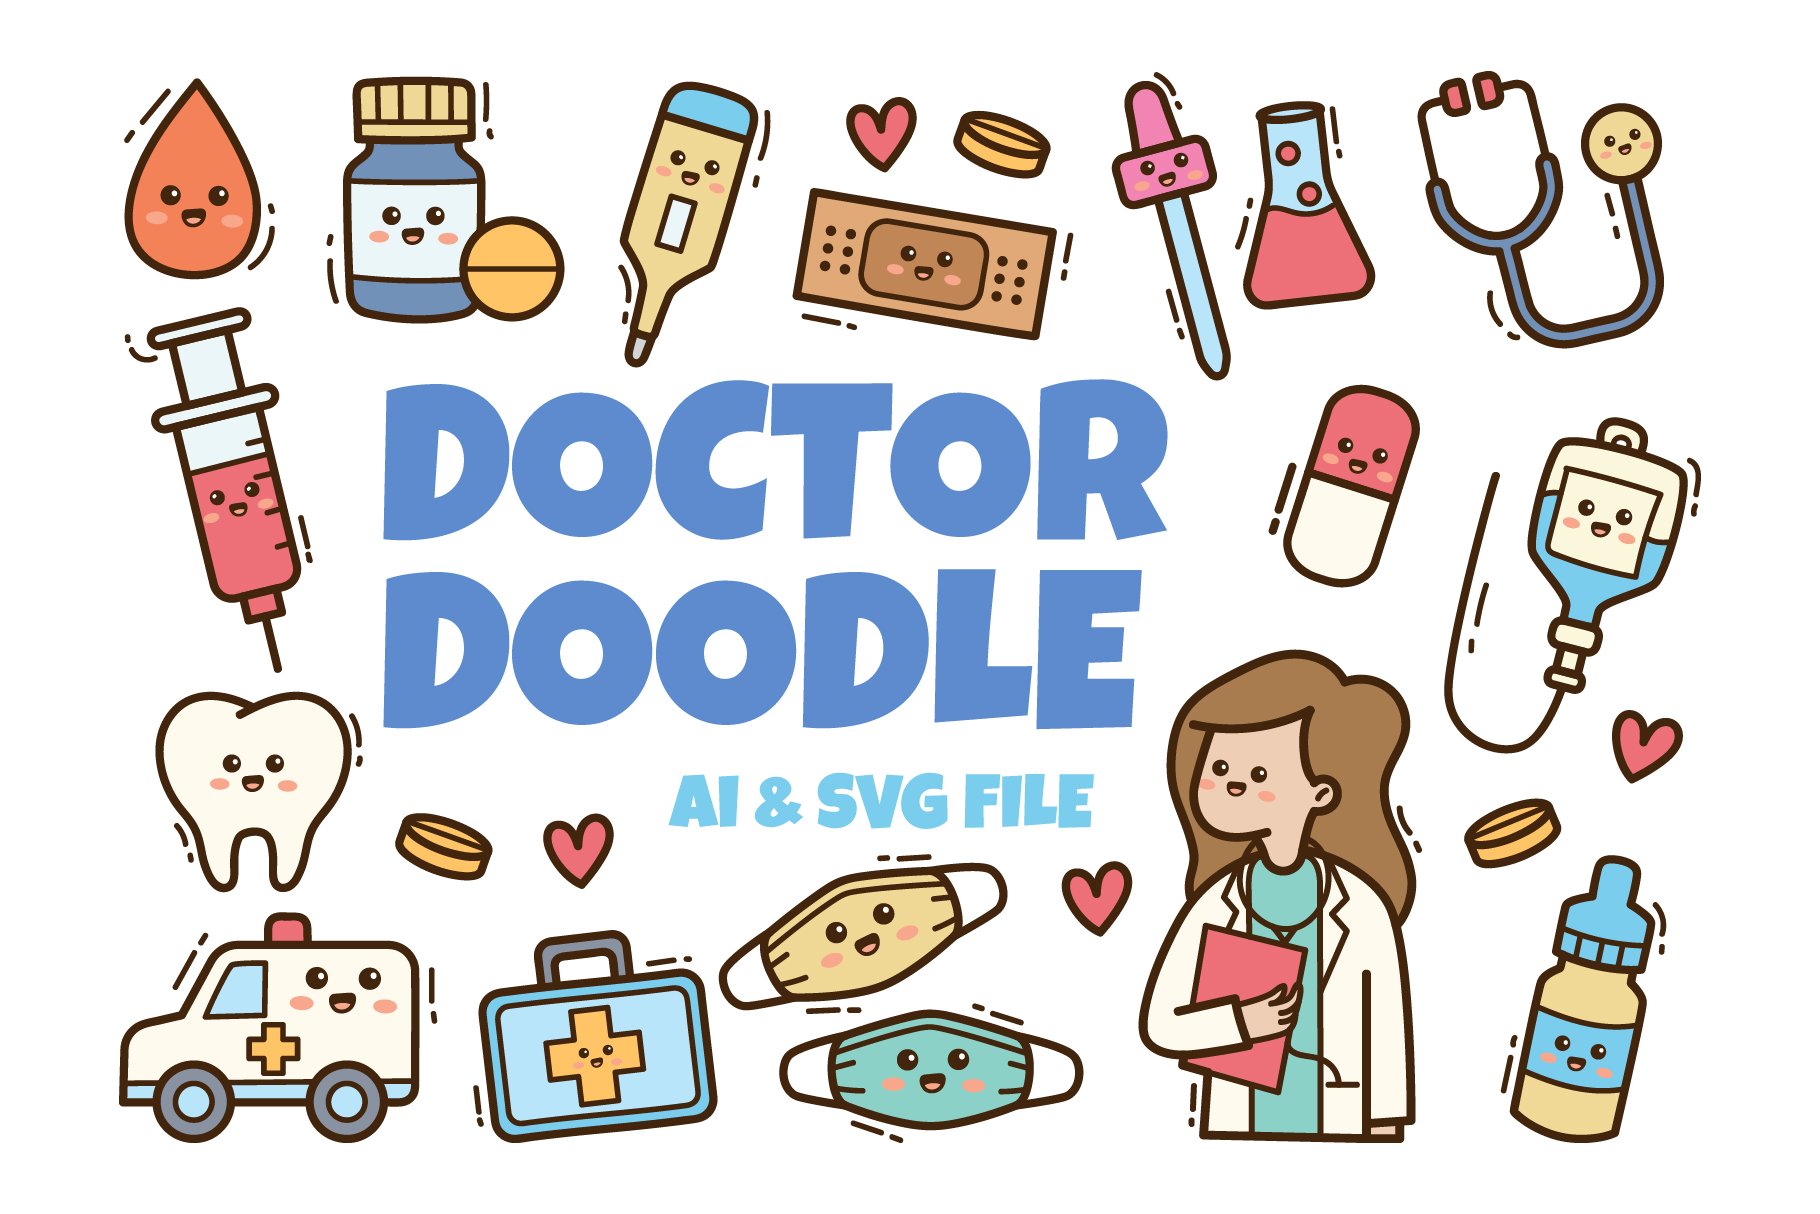 Doctor Kawaii Doodle Illustration cover image.